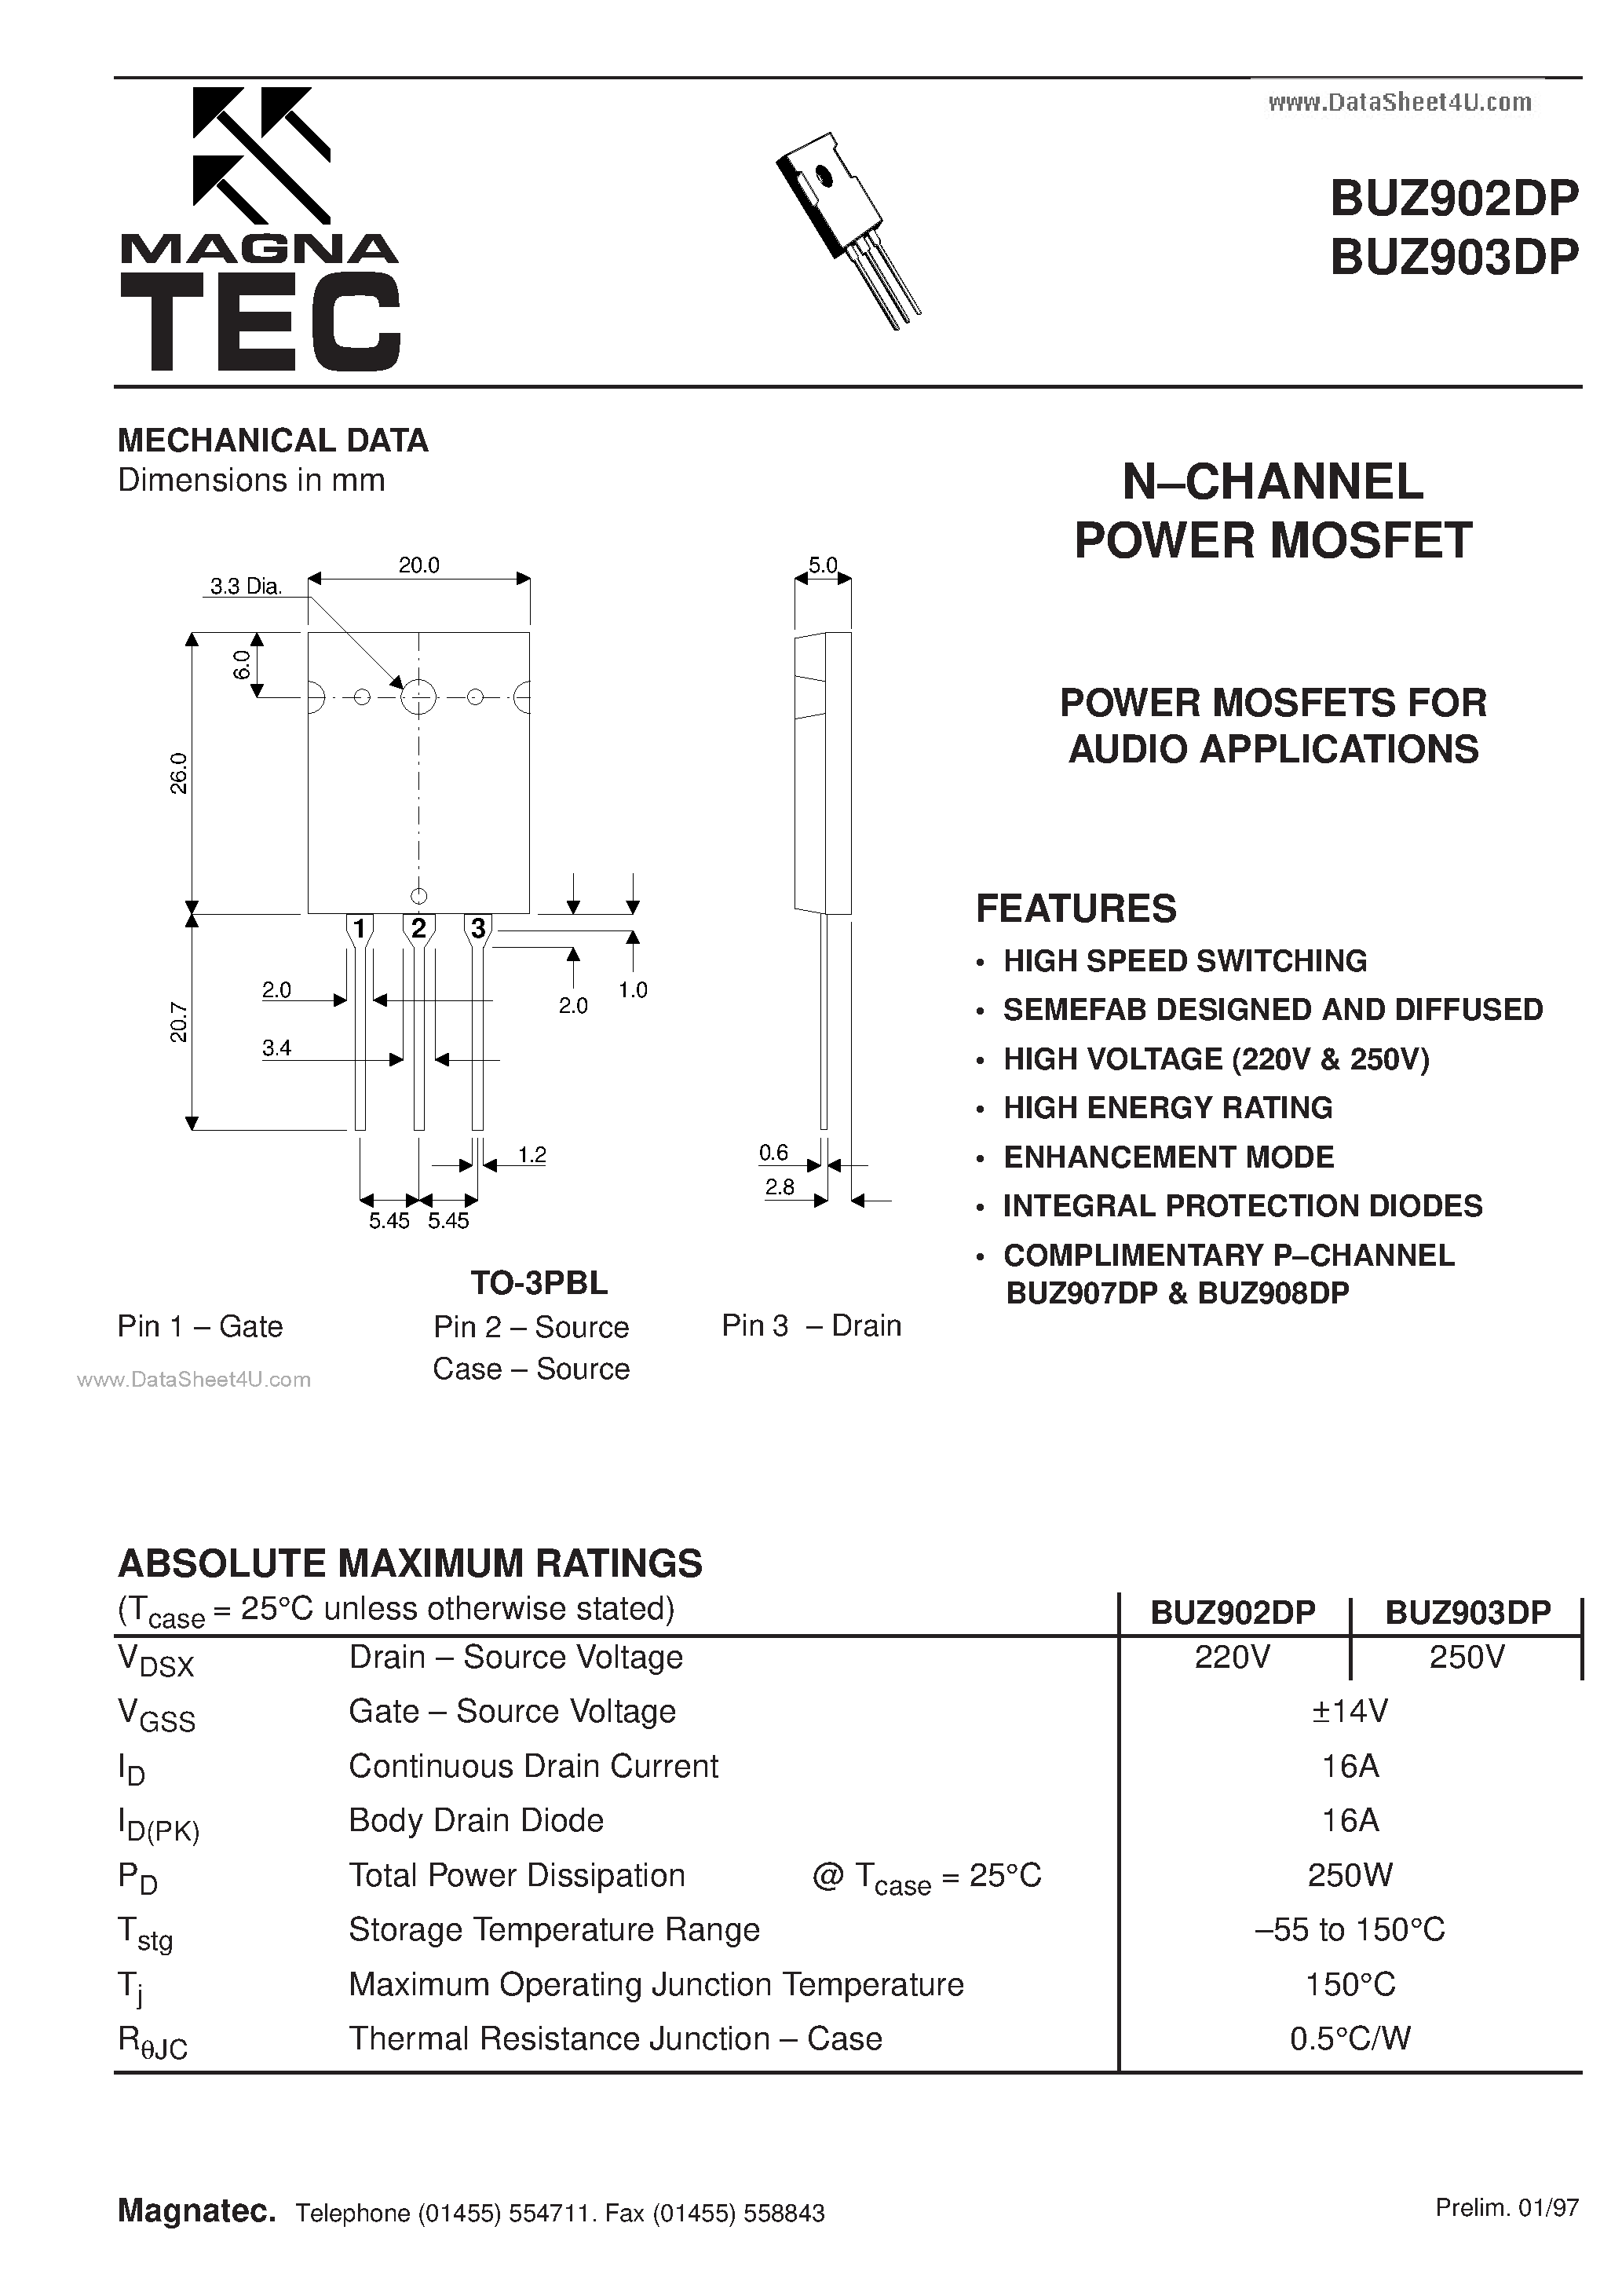 Даташит BUZ902DP-(BUZ902DP / BUZ903DP) N CHANNEL POWER MOSFET страница 1